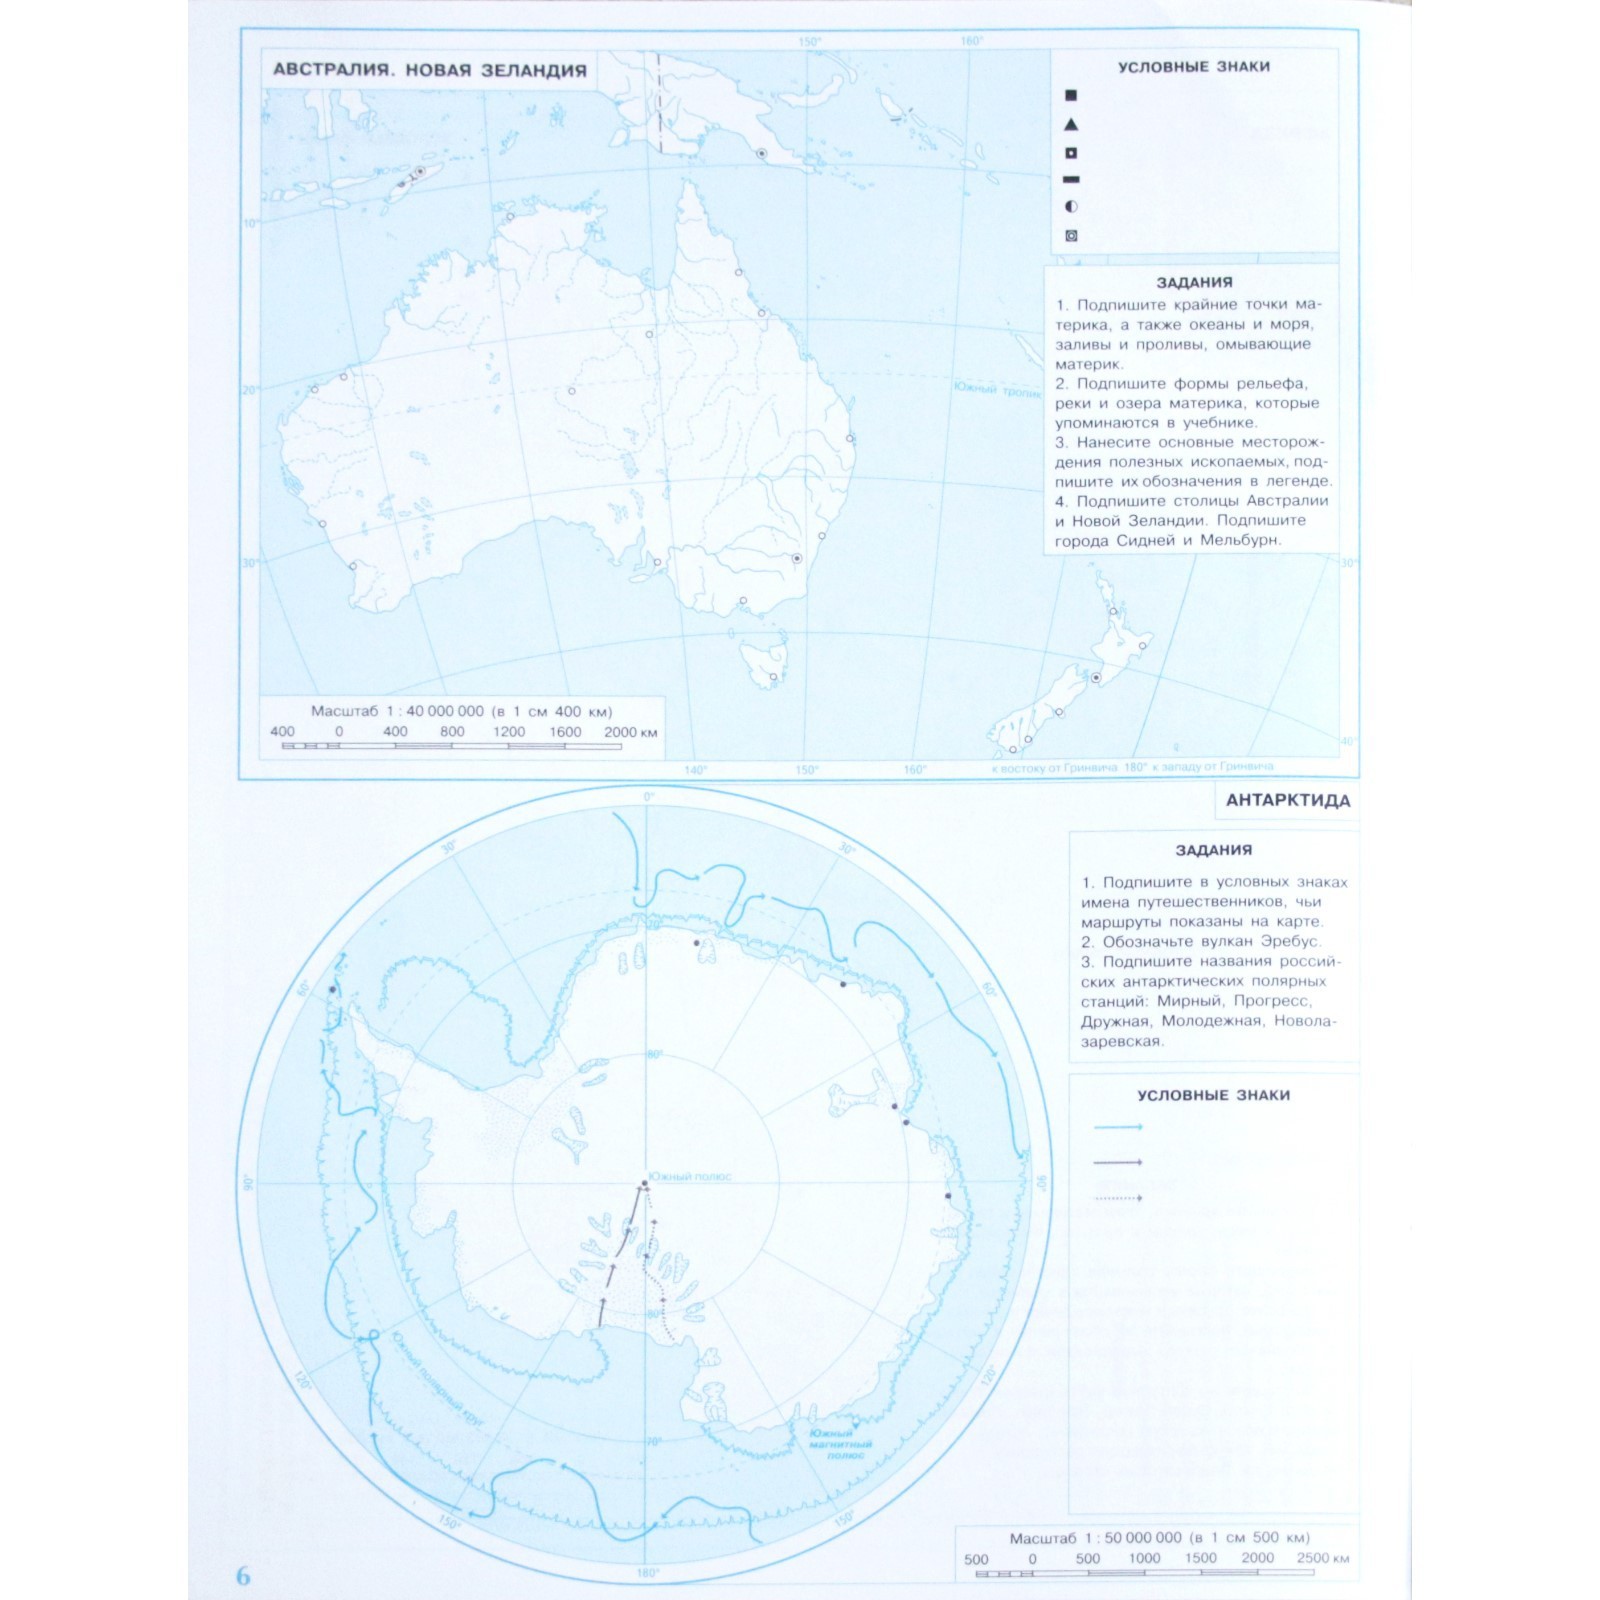 Контурная карта 6 класс дронов. География 7 класс контурные карты стр 12-13. Заливы Австралии на контурной карте. Контурная карта стр 14-15 5 класс в бело-чёрном.